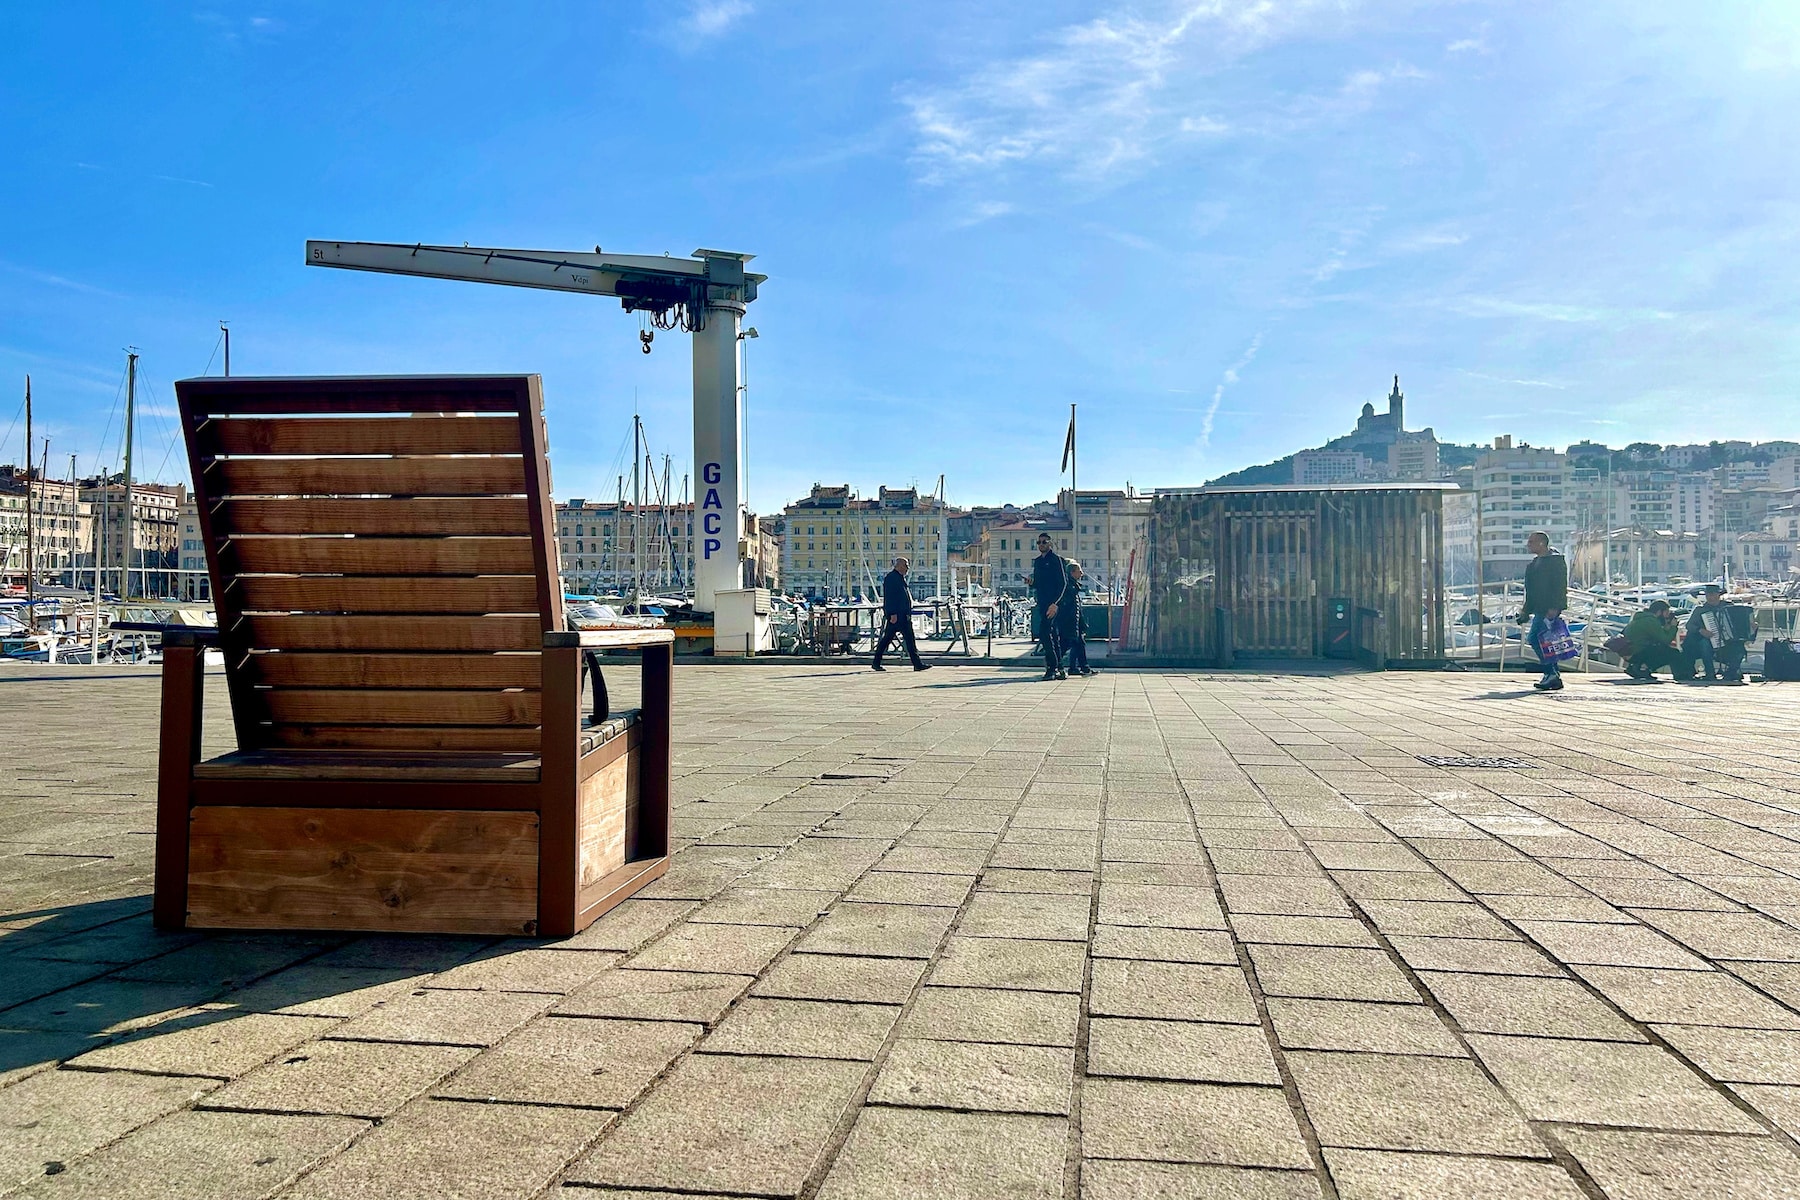 mobilier urbain, Marseille veut embellir ses espaces publics avec du mobilier urbain amovible, Made in Marseille